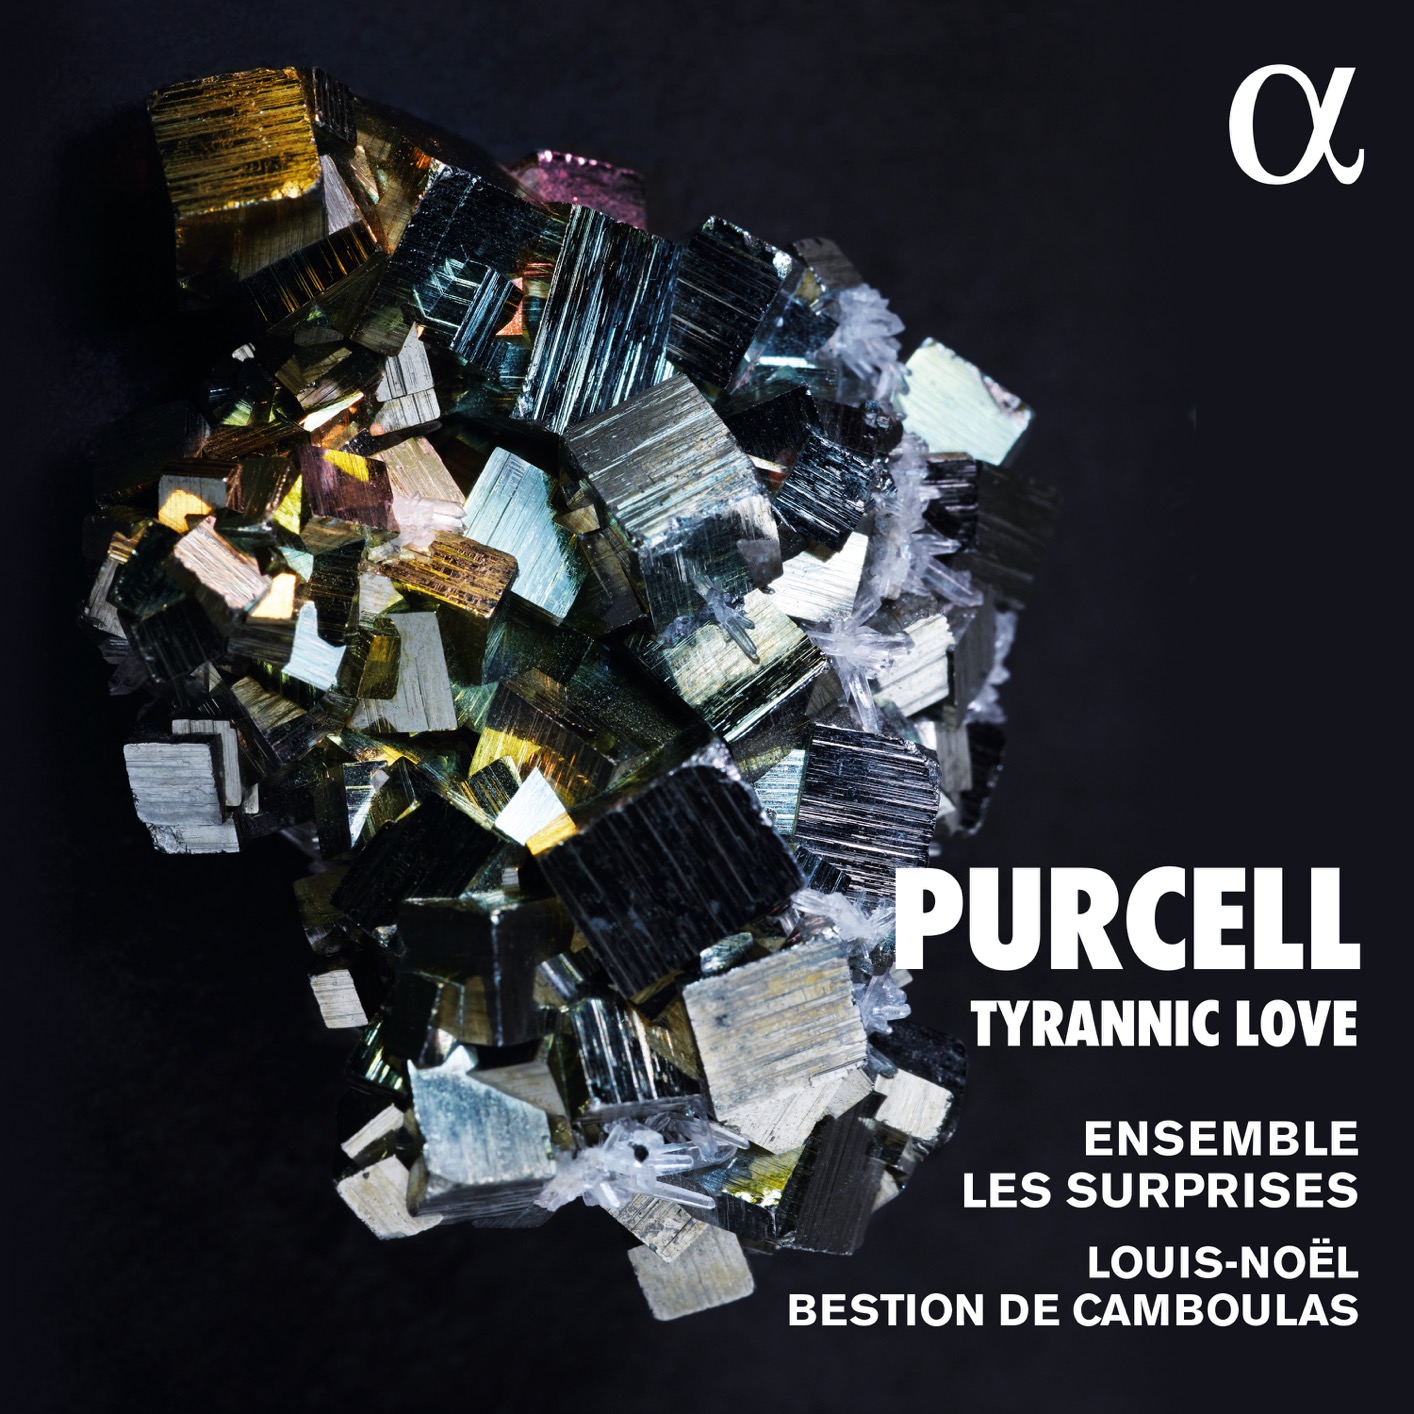 Ensemble Les Surprises, Louis-Noel Bestion de Camboulas - Purcell - Tyrannic Love (2021) [FLAC 24bit/96kHz]